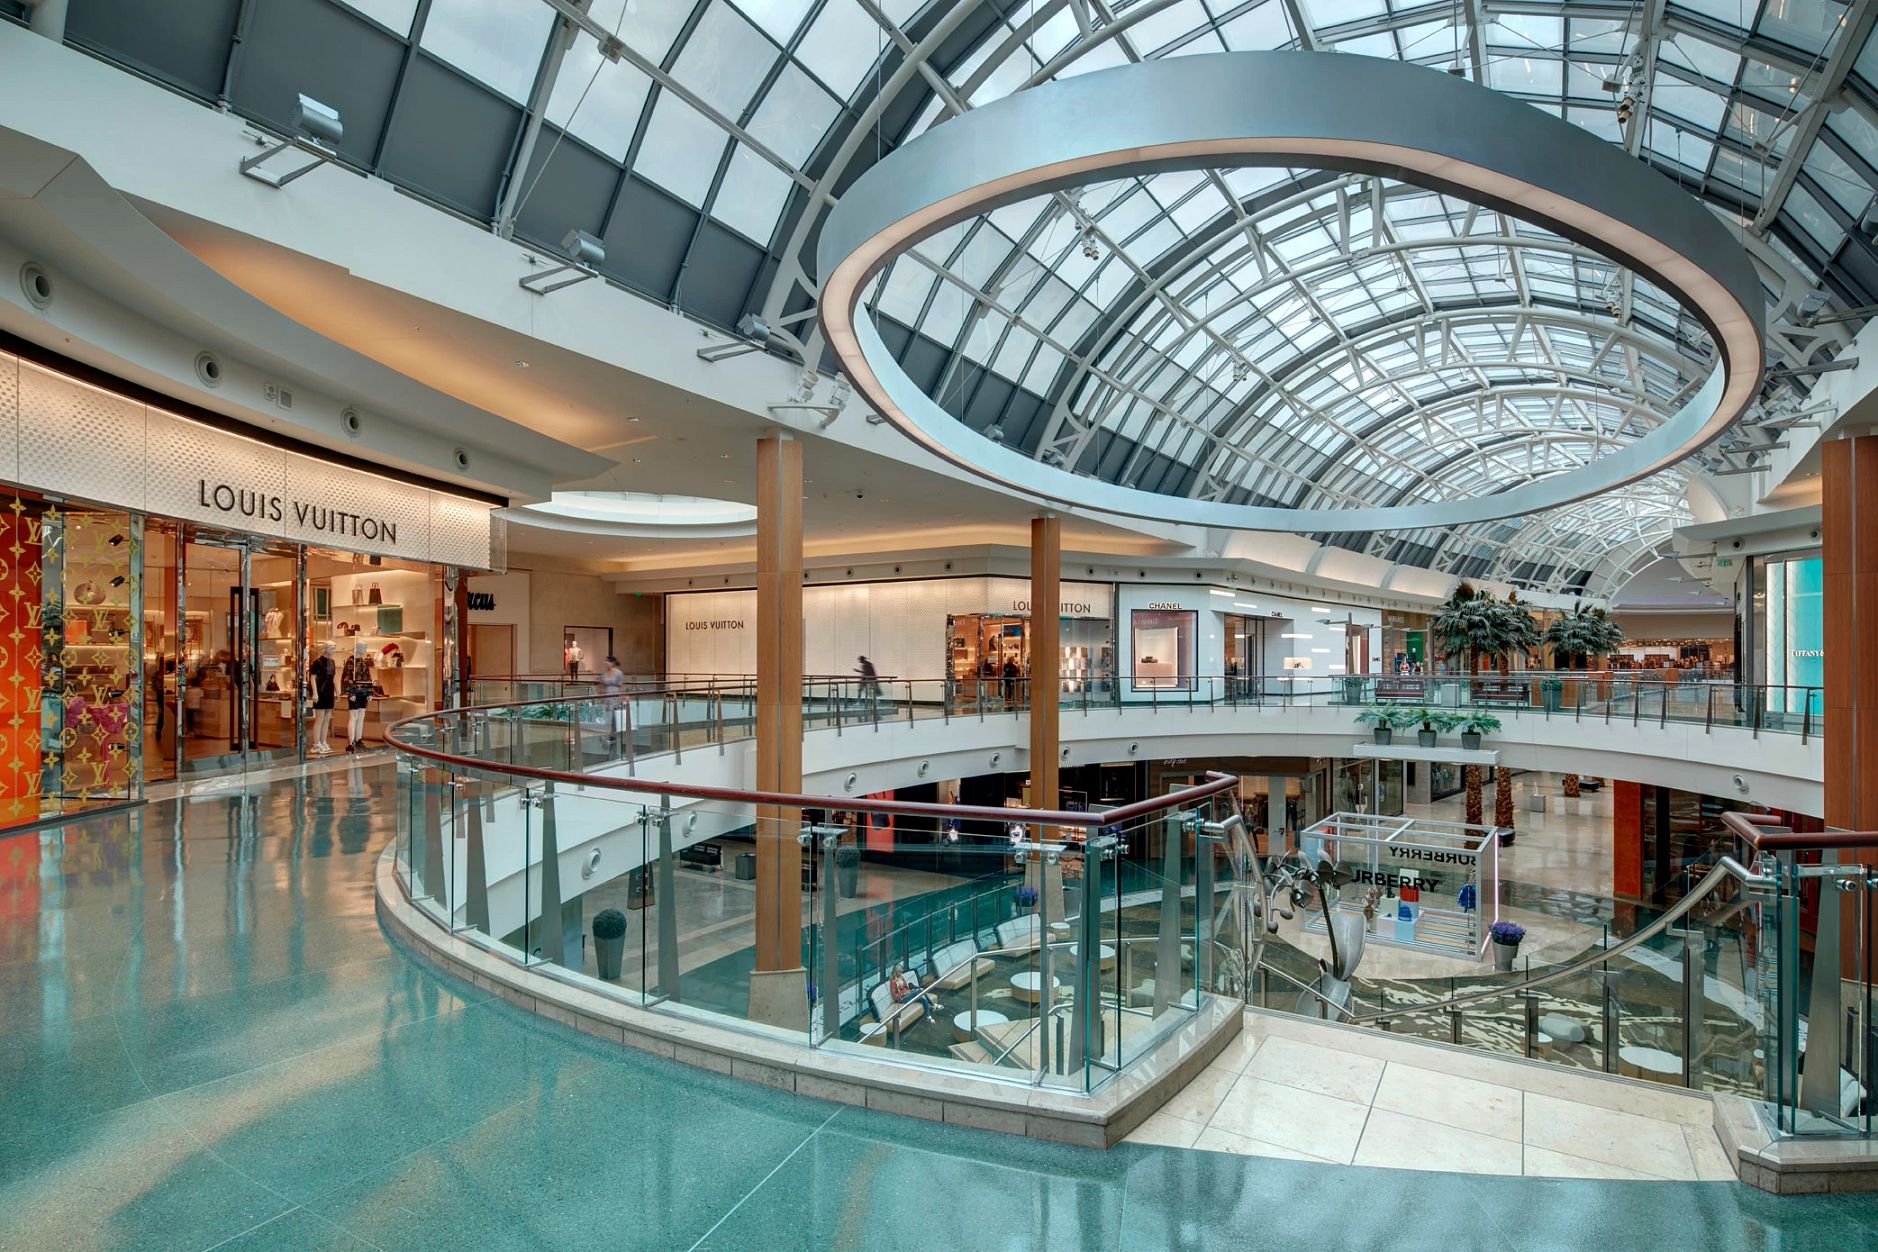 Mall at Millenia: o melhor shopping de Orlando - Vai pra Disney?